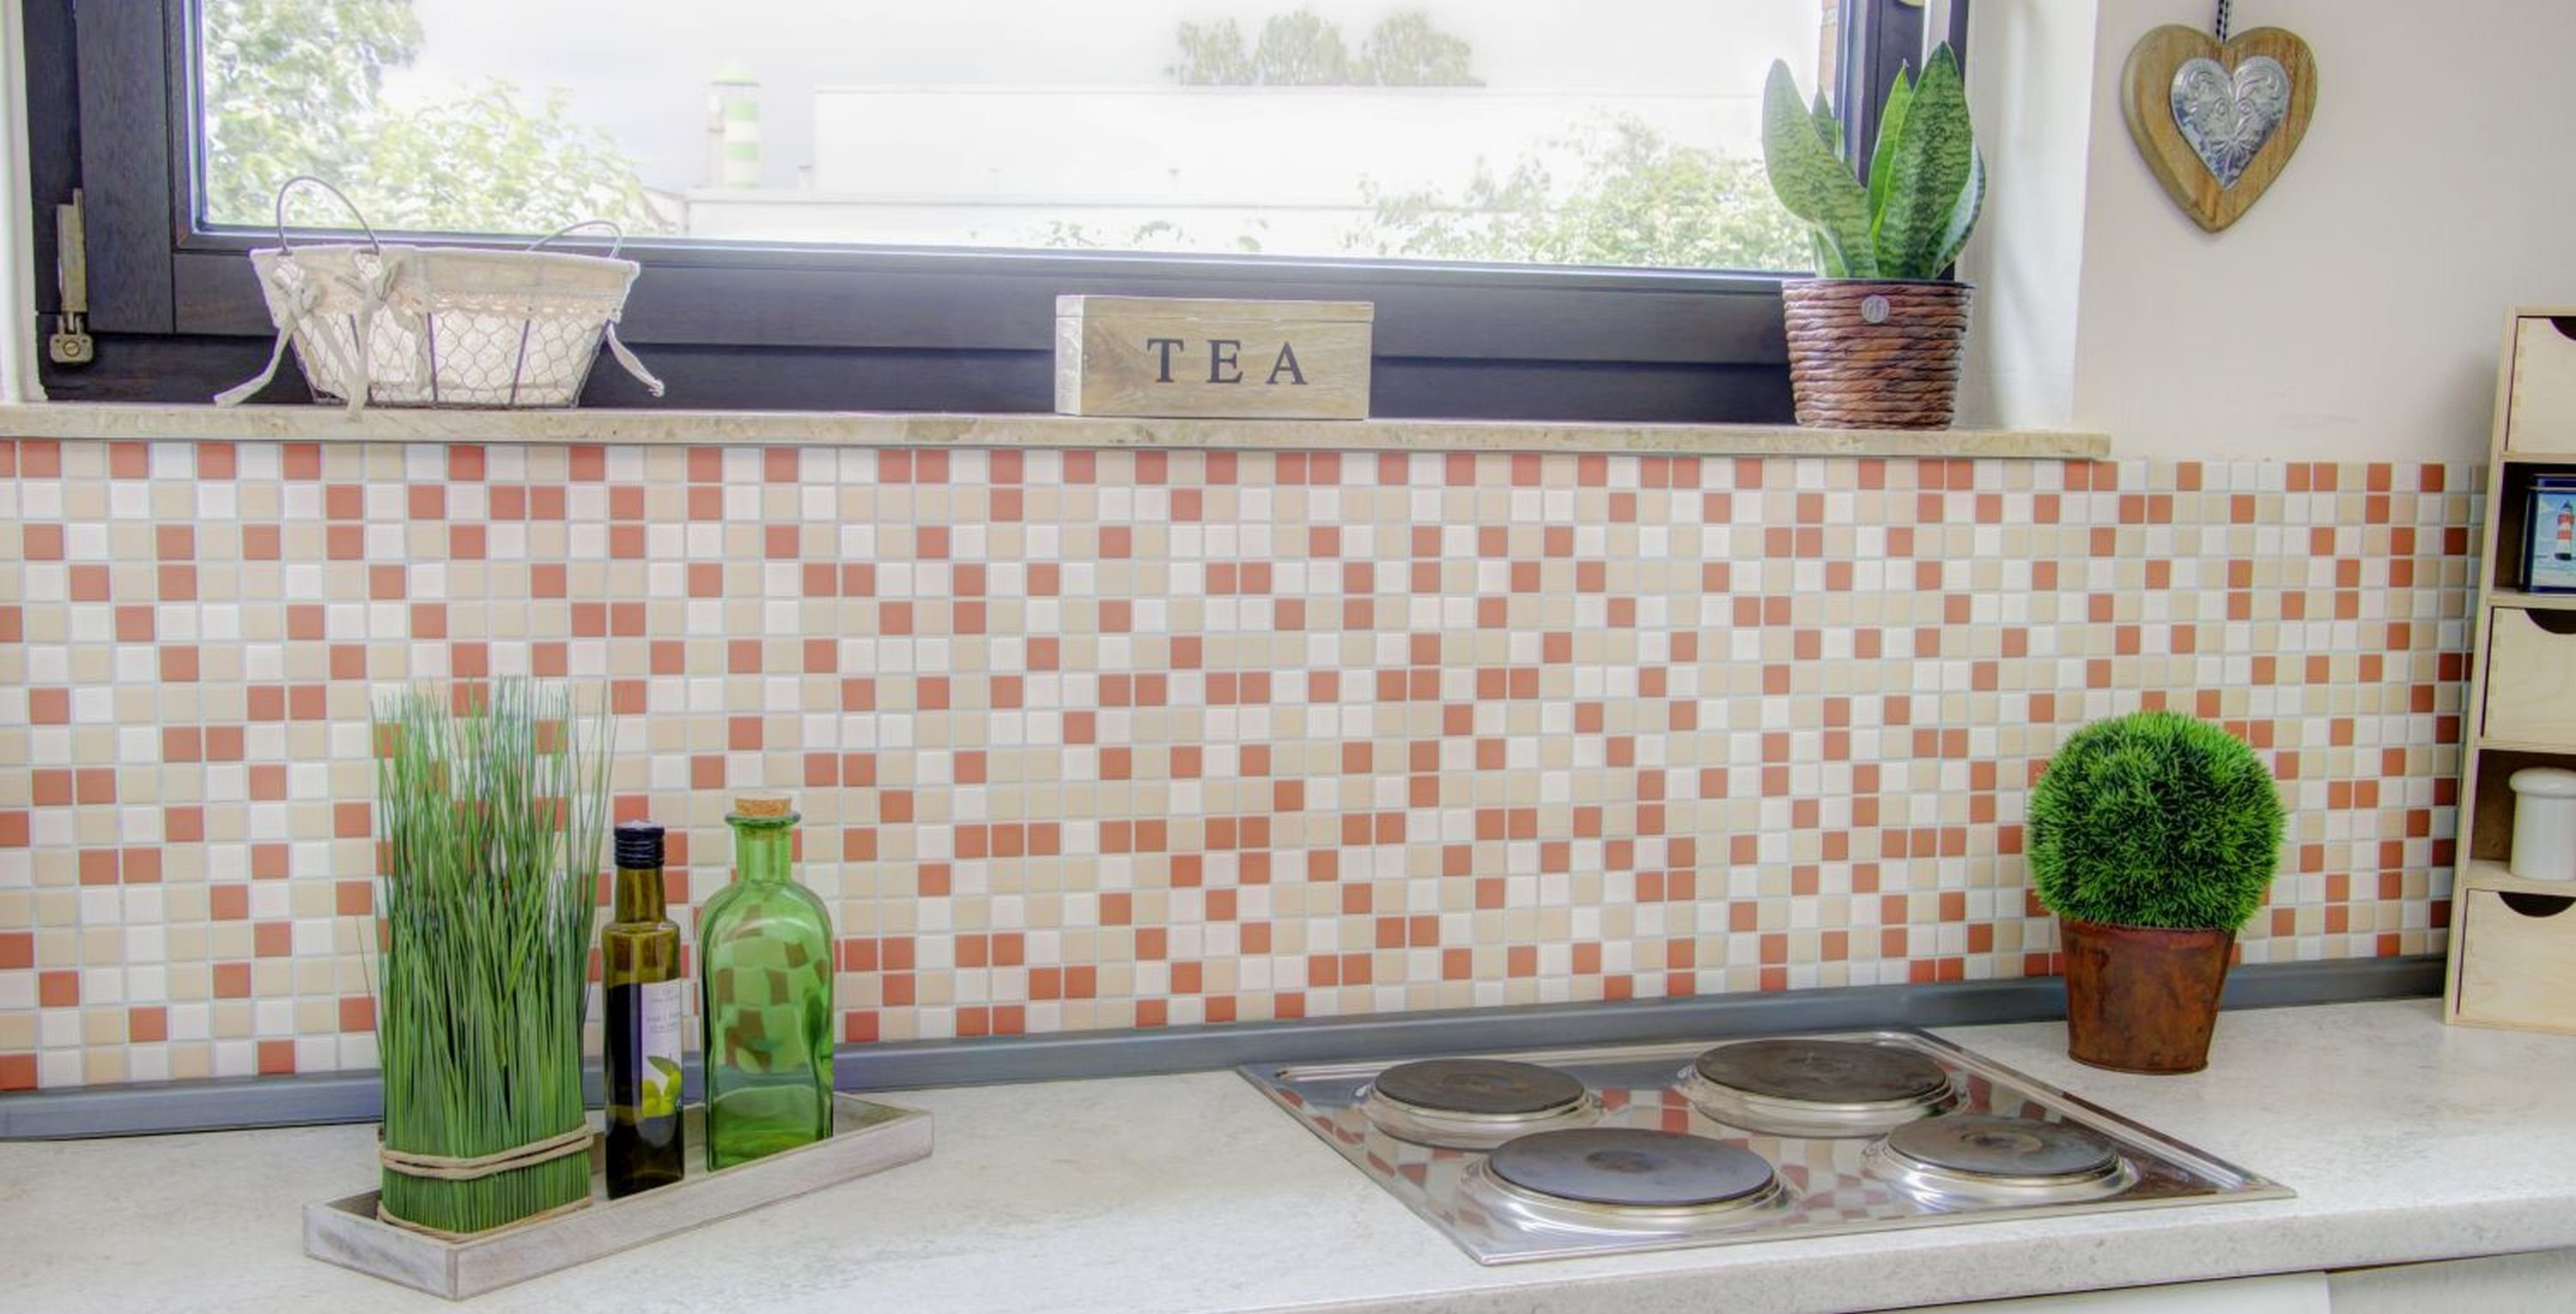 Mosaik weiß Fliese Keramik Fliesenspiegel Küche Mosani terracotta Mosaikfliesen matt creme